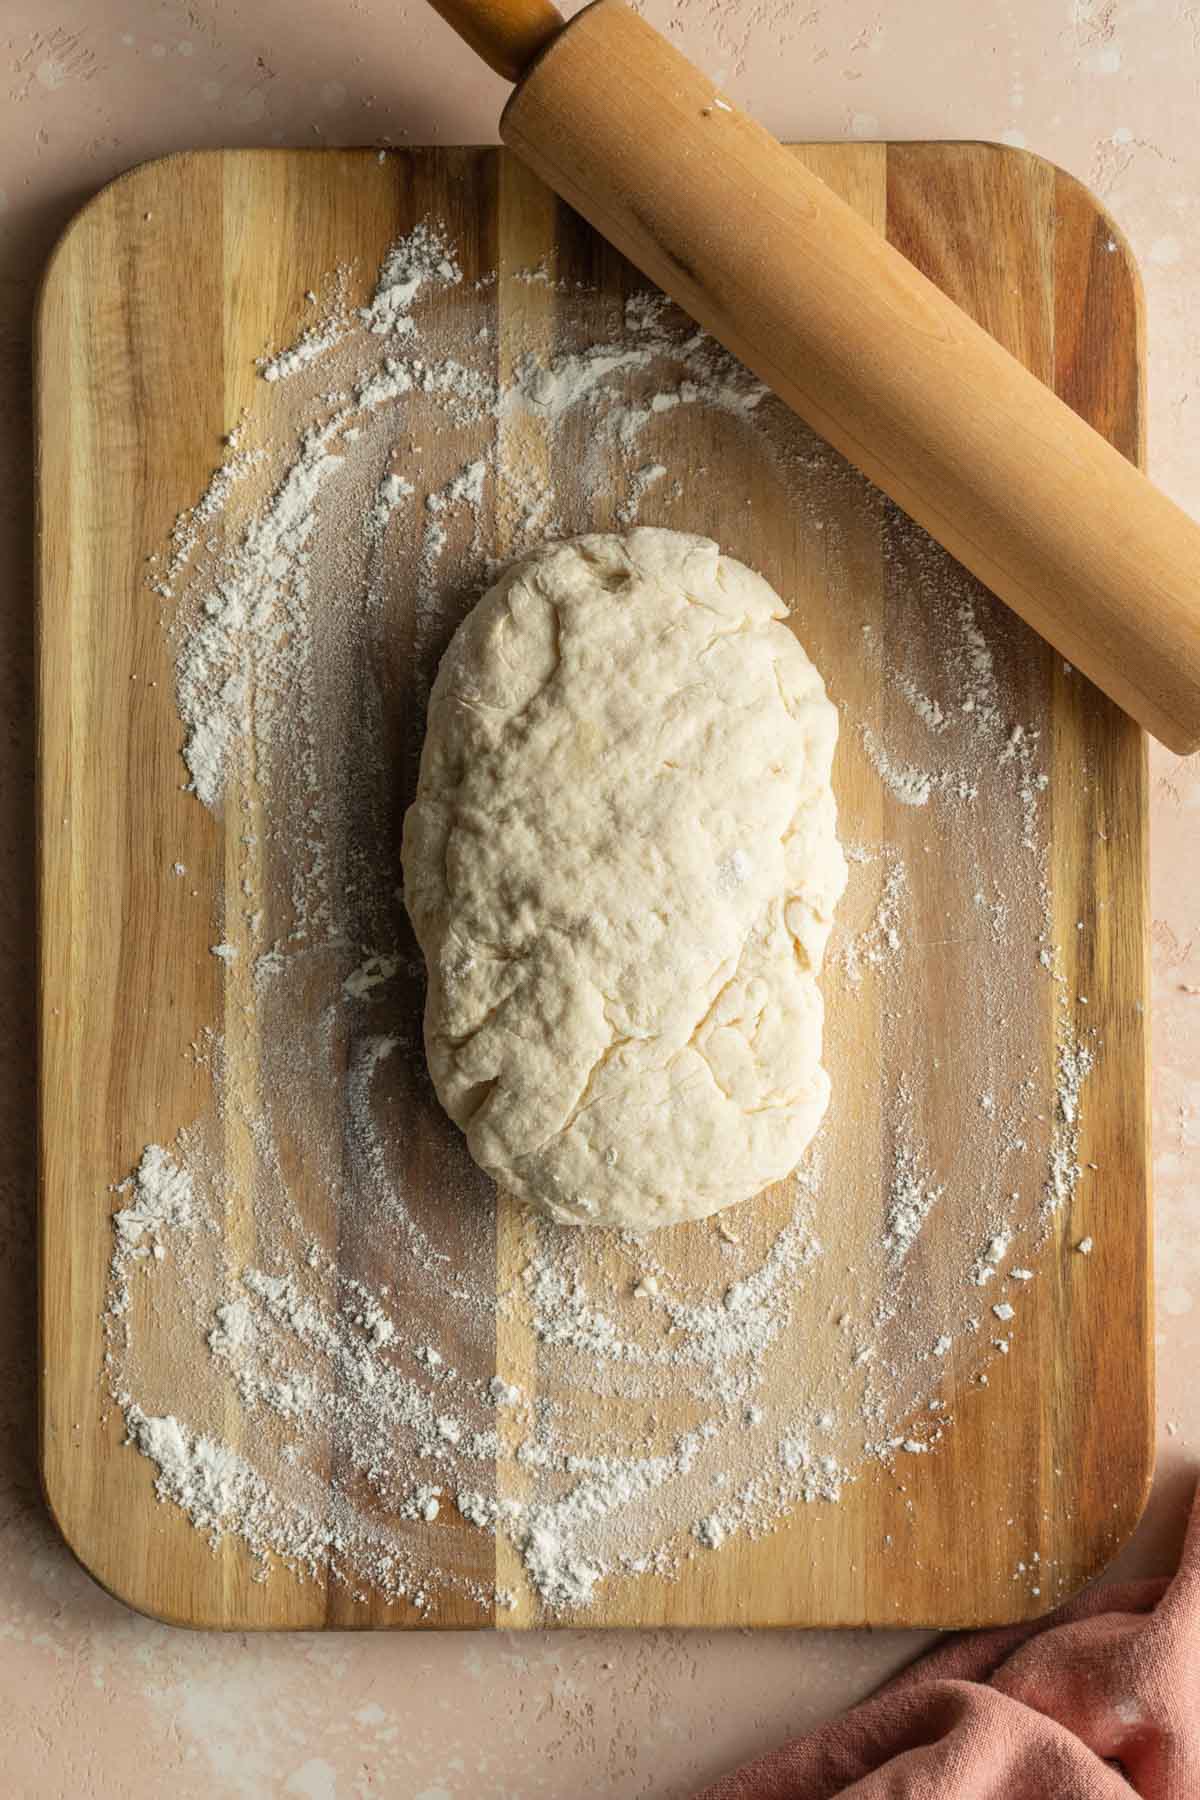 Cinnamon roll dough on a floured wooden surface.